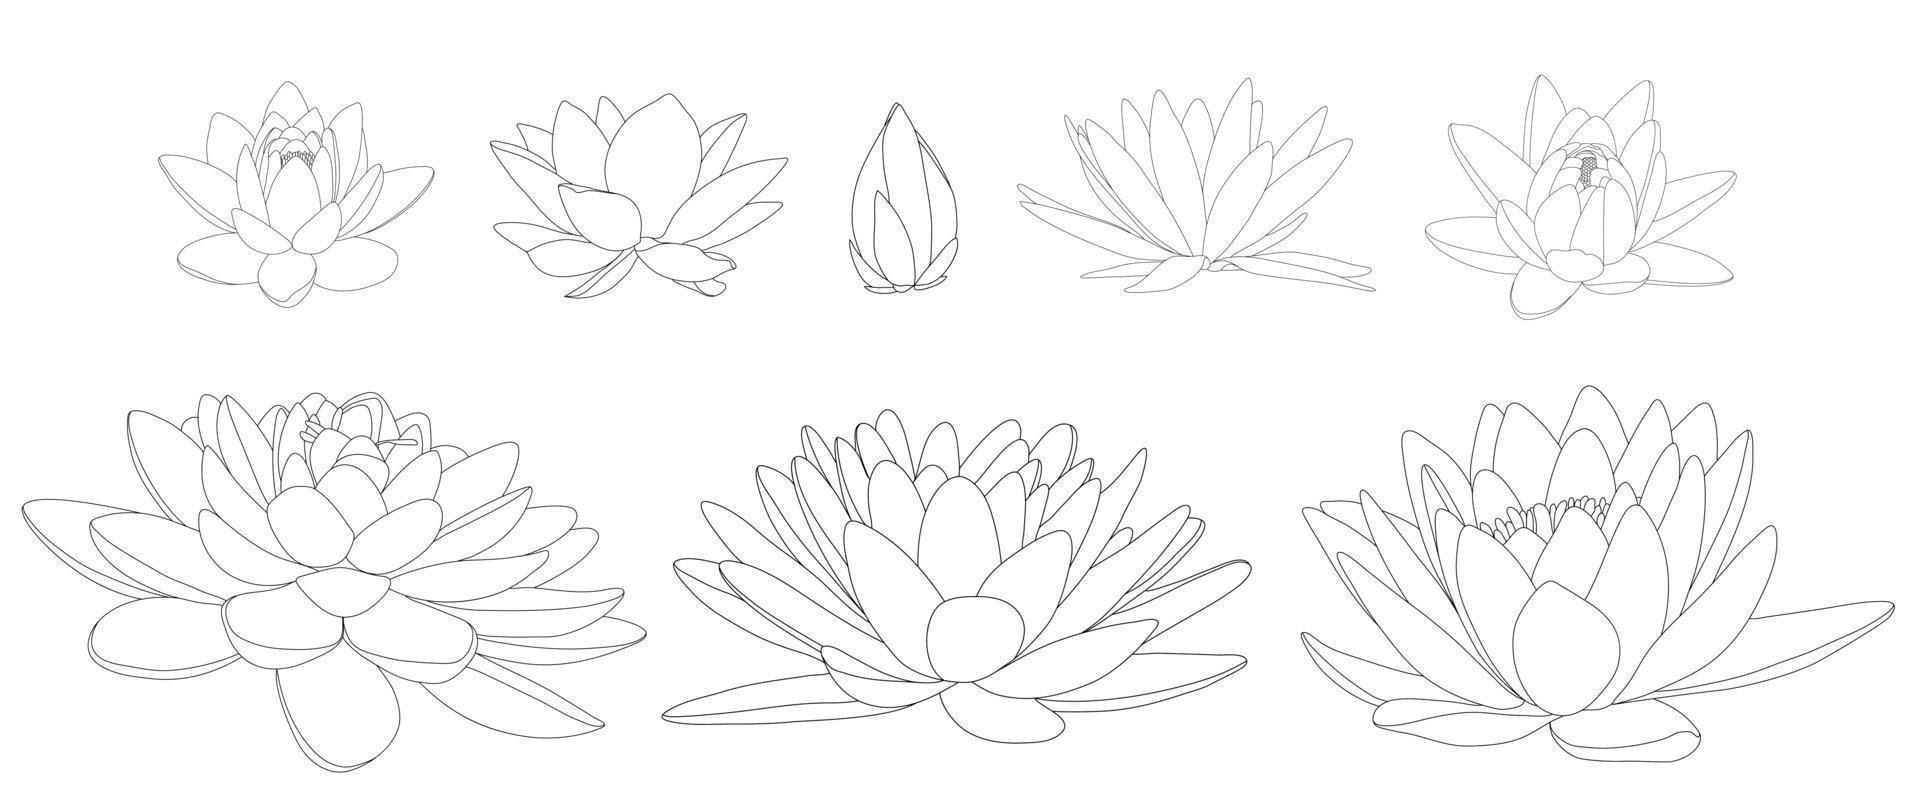 flores de lótus em diferentes flores e formas. ilustração a preto e branco de diferentes tipos de nenúfares. vetor